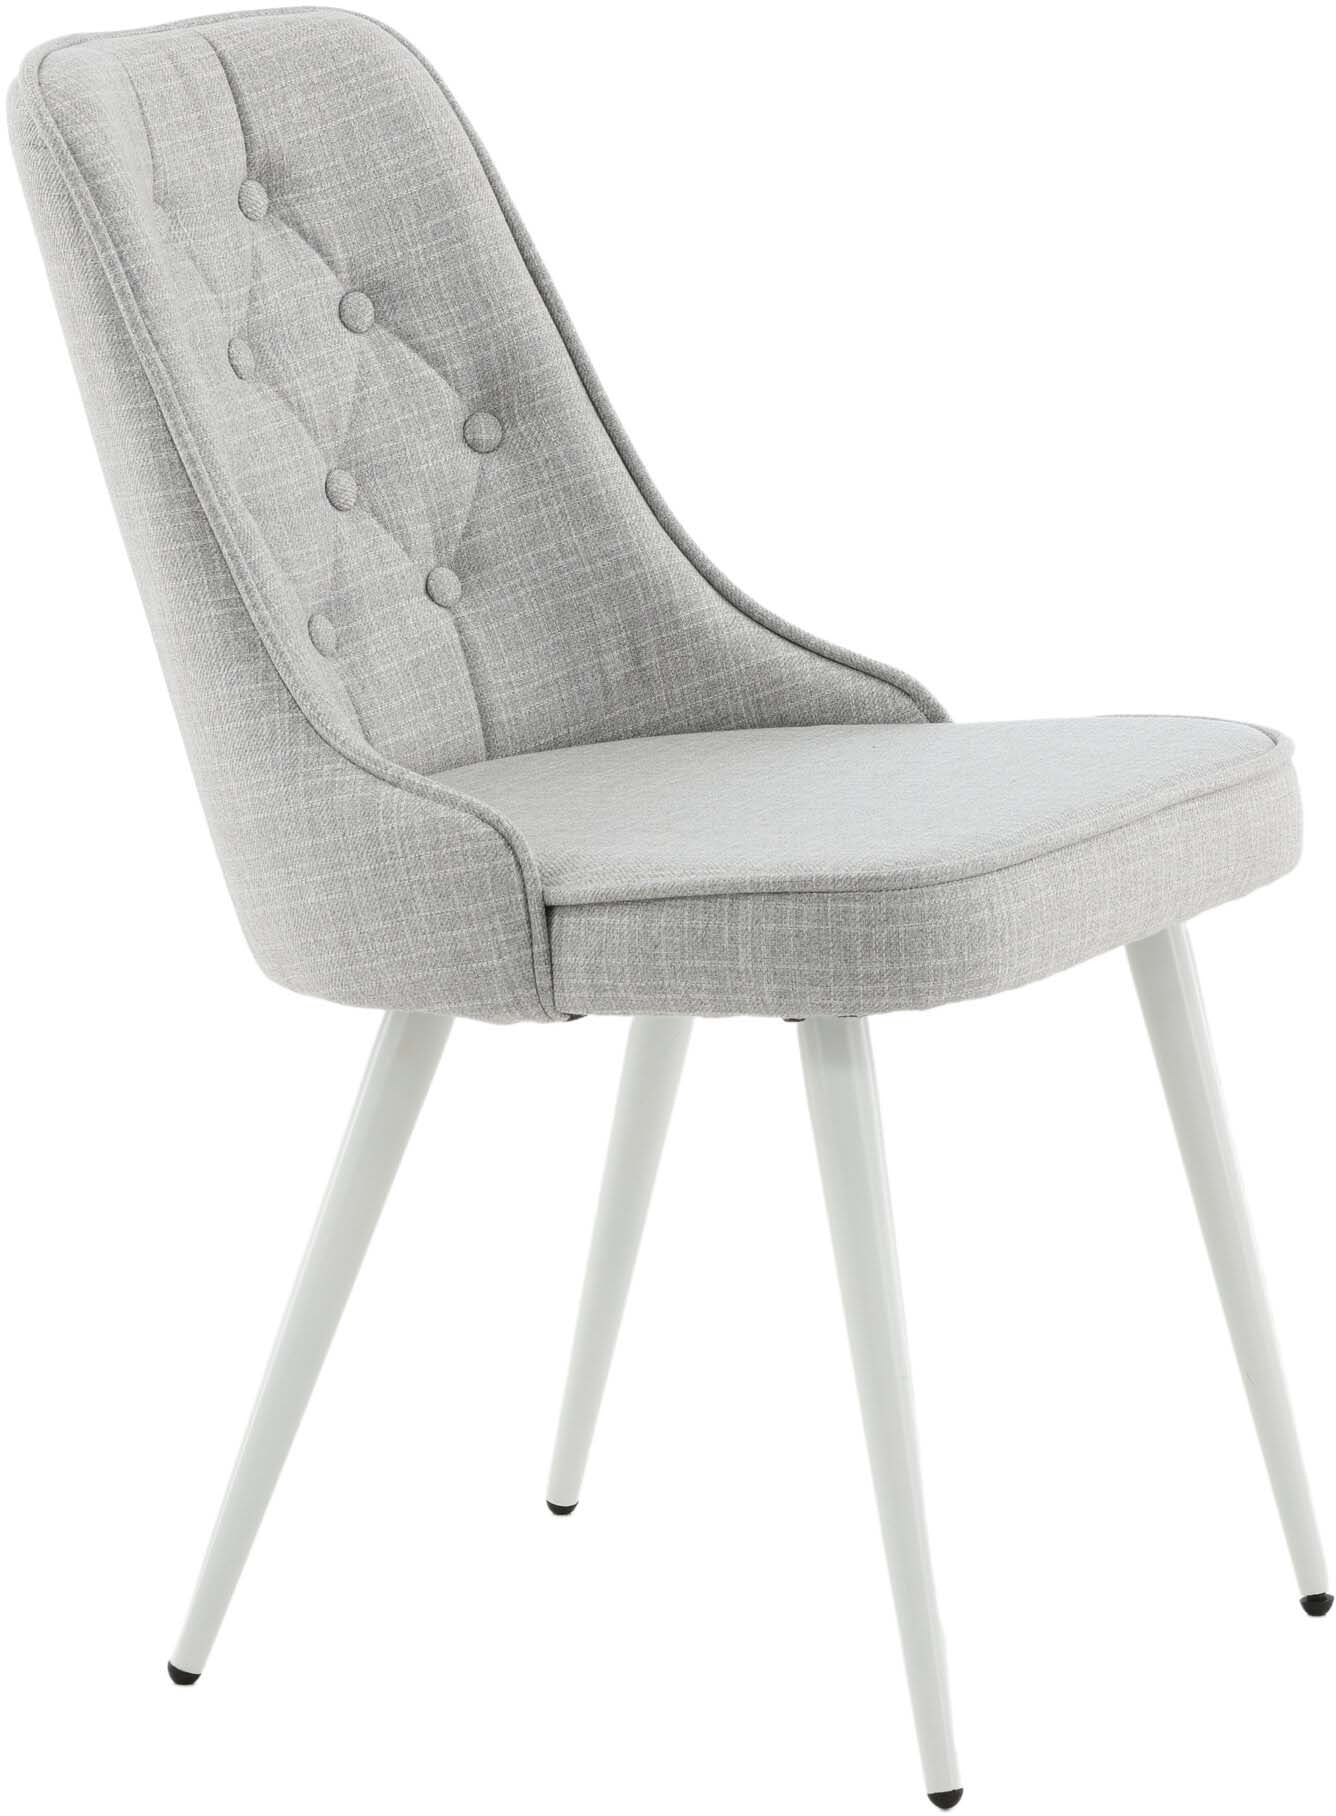 Velvet Deluxe Stuhl in Hellgrau / Weiss präsentiert im Onlineshop von KAQTU Design AG. Stuhl ist von Venture Home